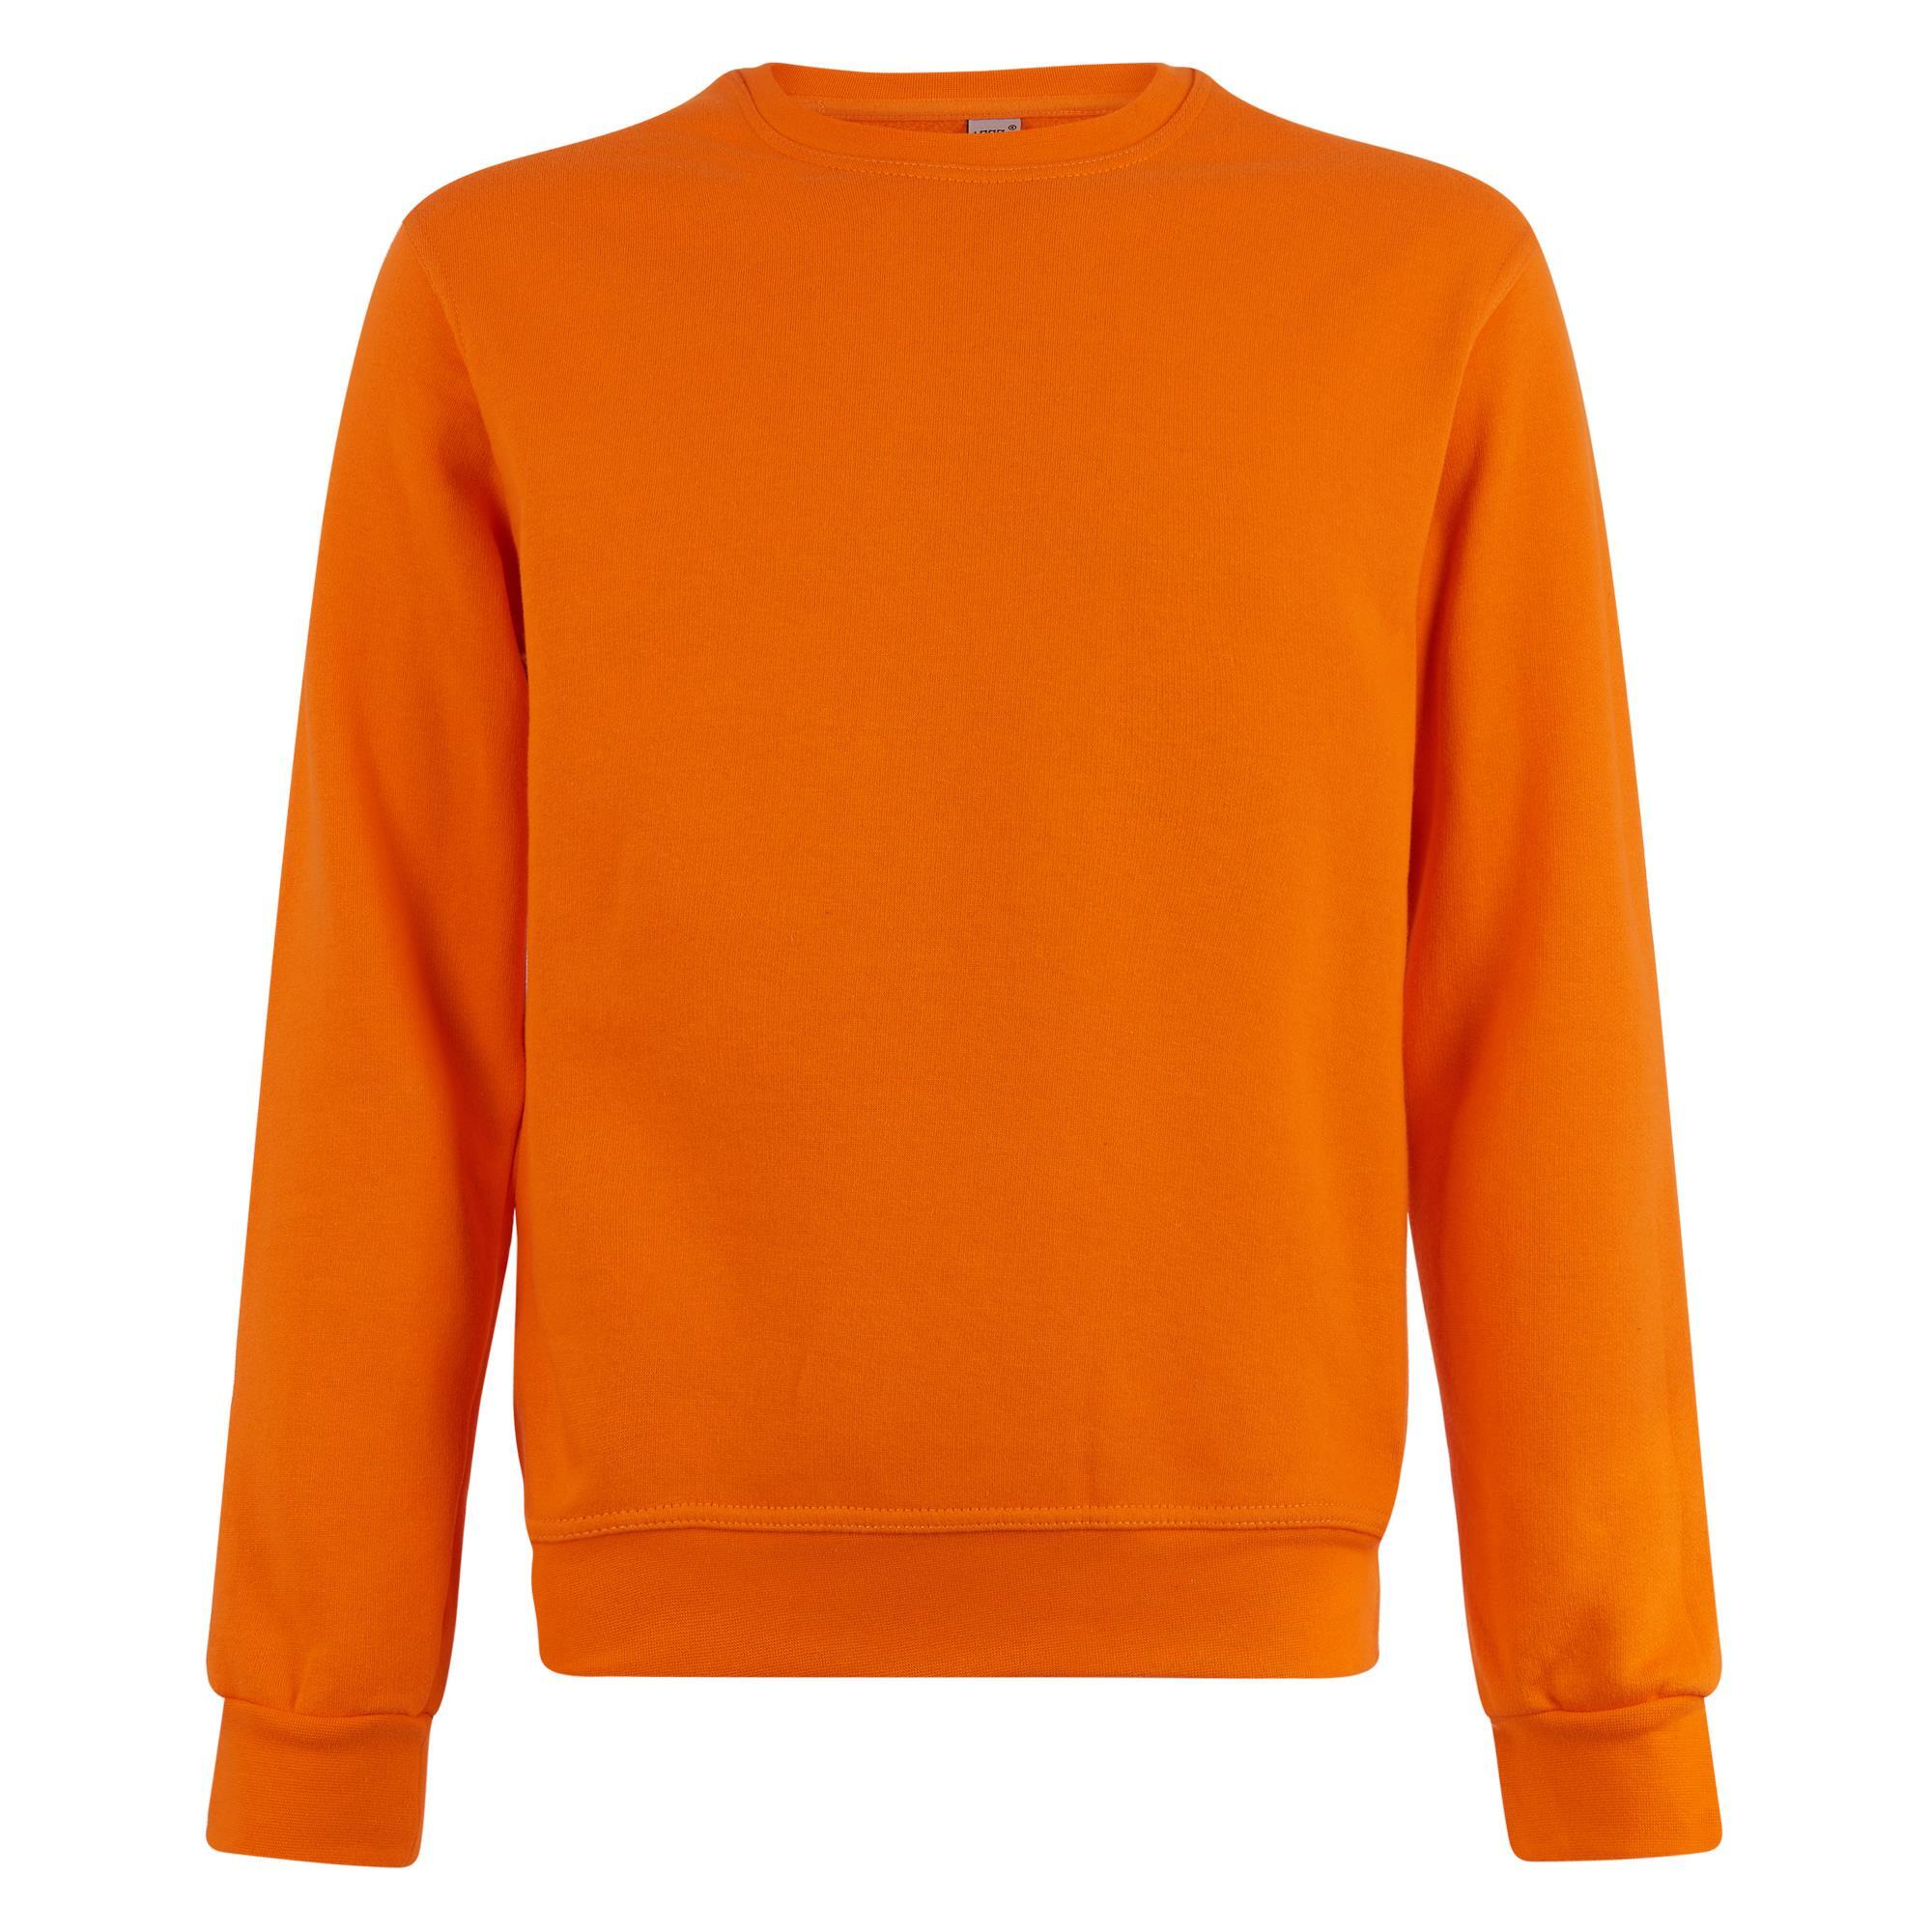 Sweater in de kleur oranje voor mannen Logostar Koningsdag 